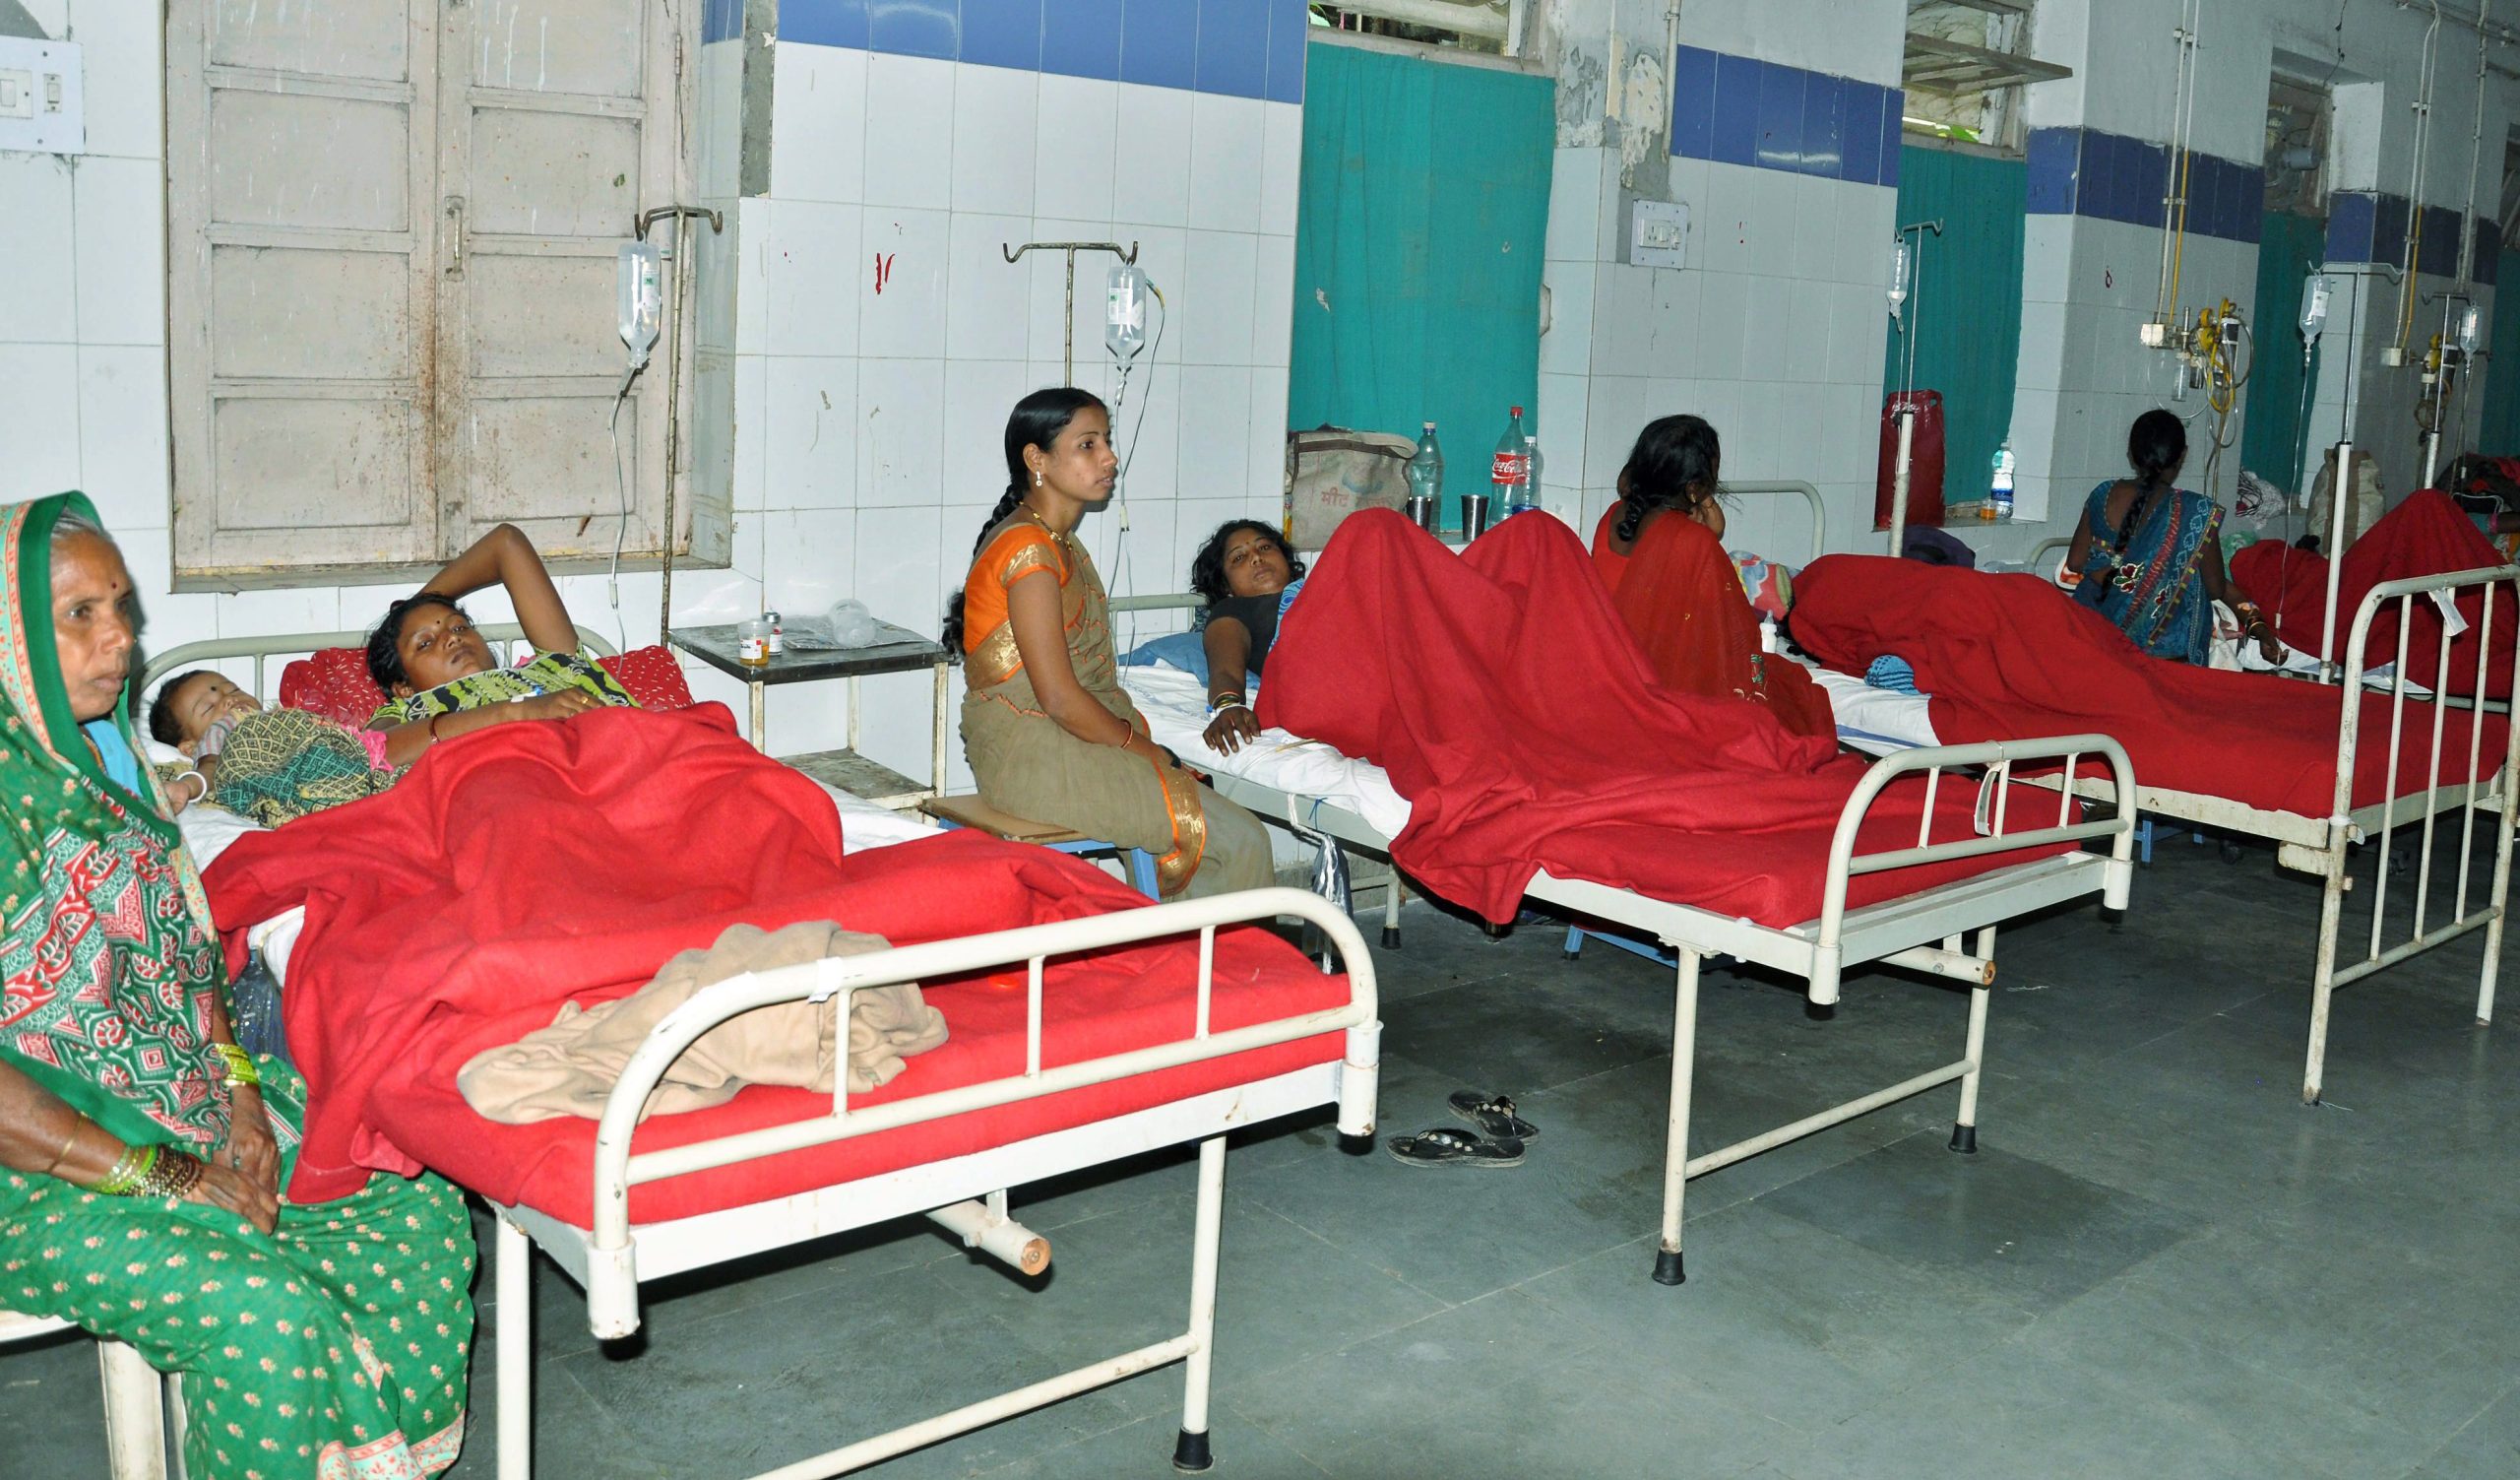 Esterilização em massa mata 13 mulheres na índia